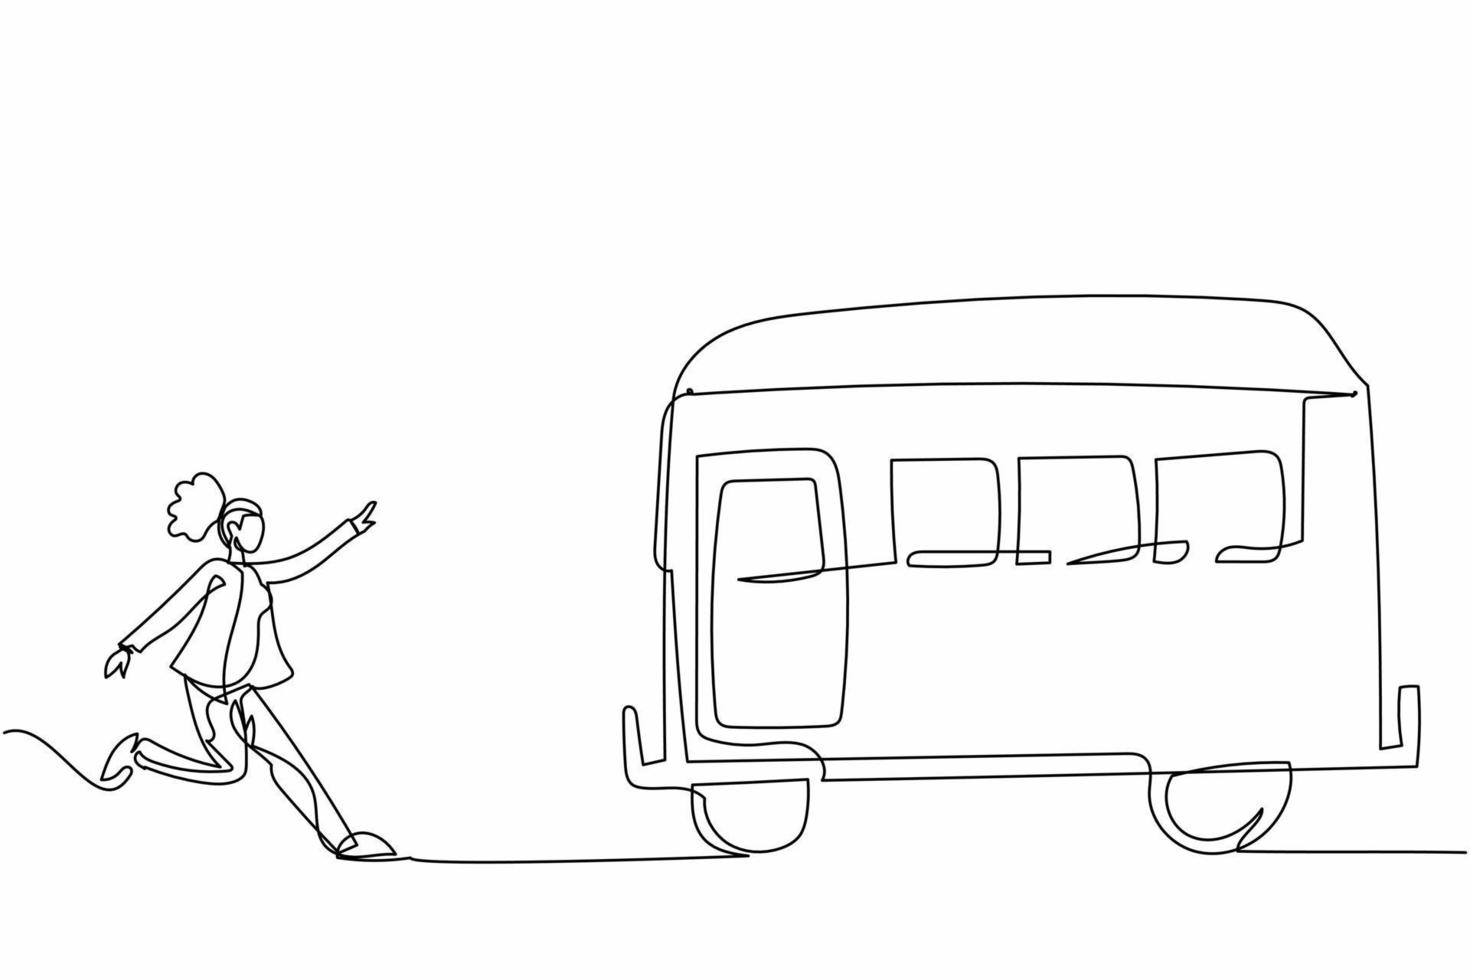 einzelne eine strichzeichnung geschäftsfrau laufen jagen versuchen, zug zu erwischen. Beeilen Sie sich, um Transport zu bekommen, öffentliches Personenfahrzeug. Geschäftsmetapher. ununterbrochene Linie zeichnen Design-Vektor-Illustration vektor